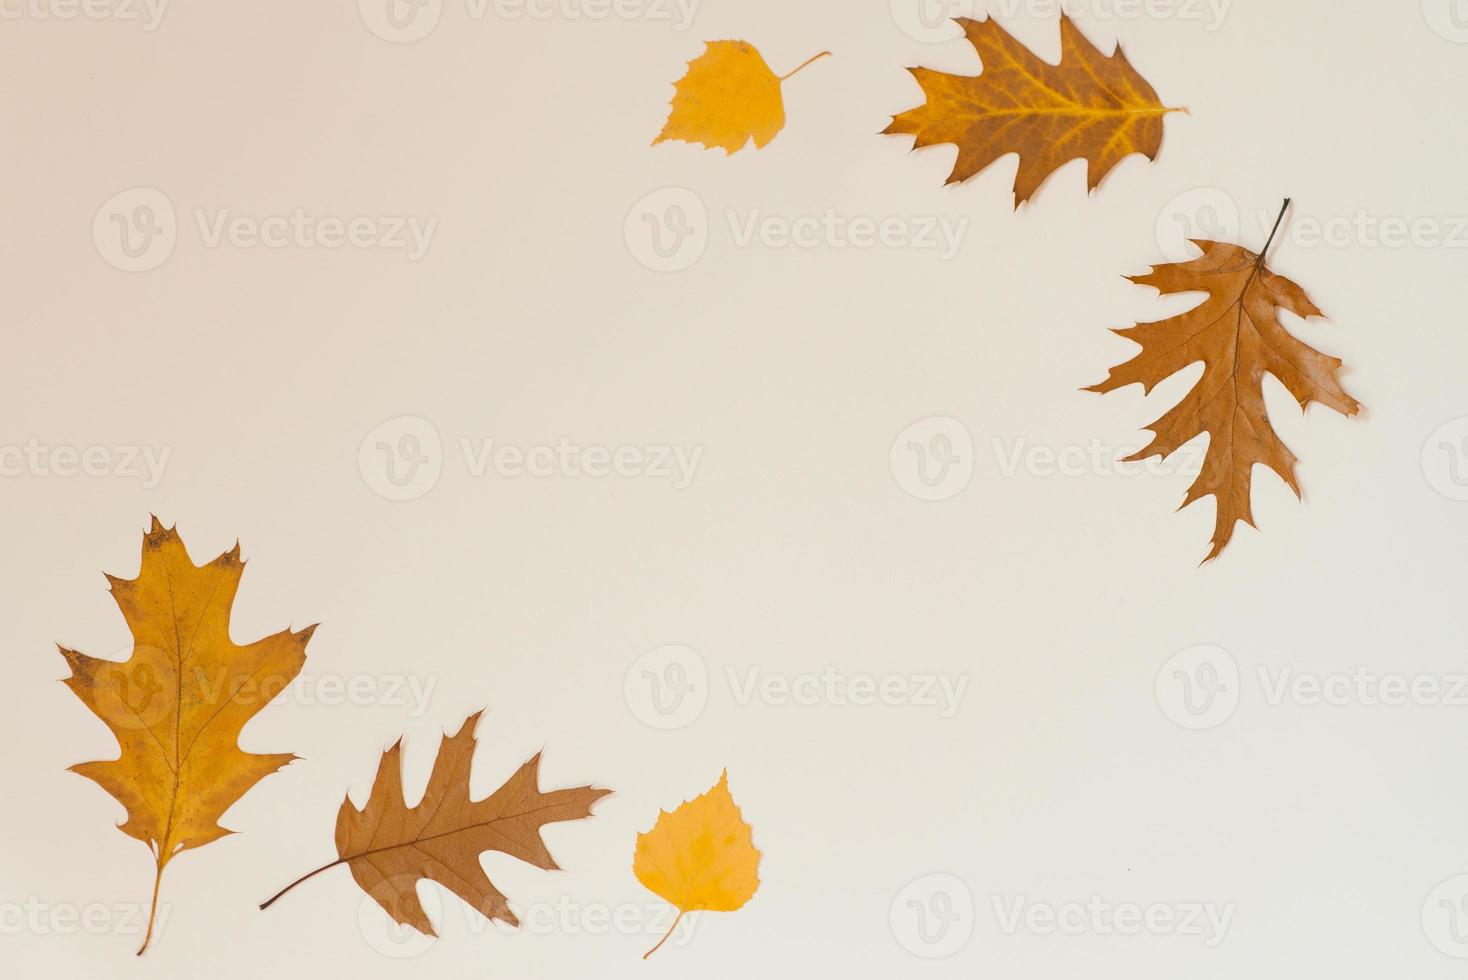 höst sammansättning med fallen löv på en ljus bakgrund. bakgrund av höst löv. foto